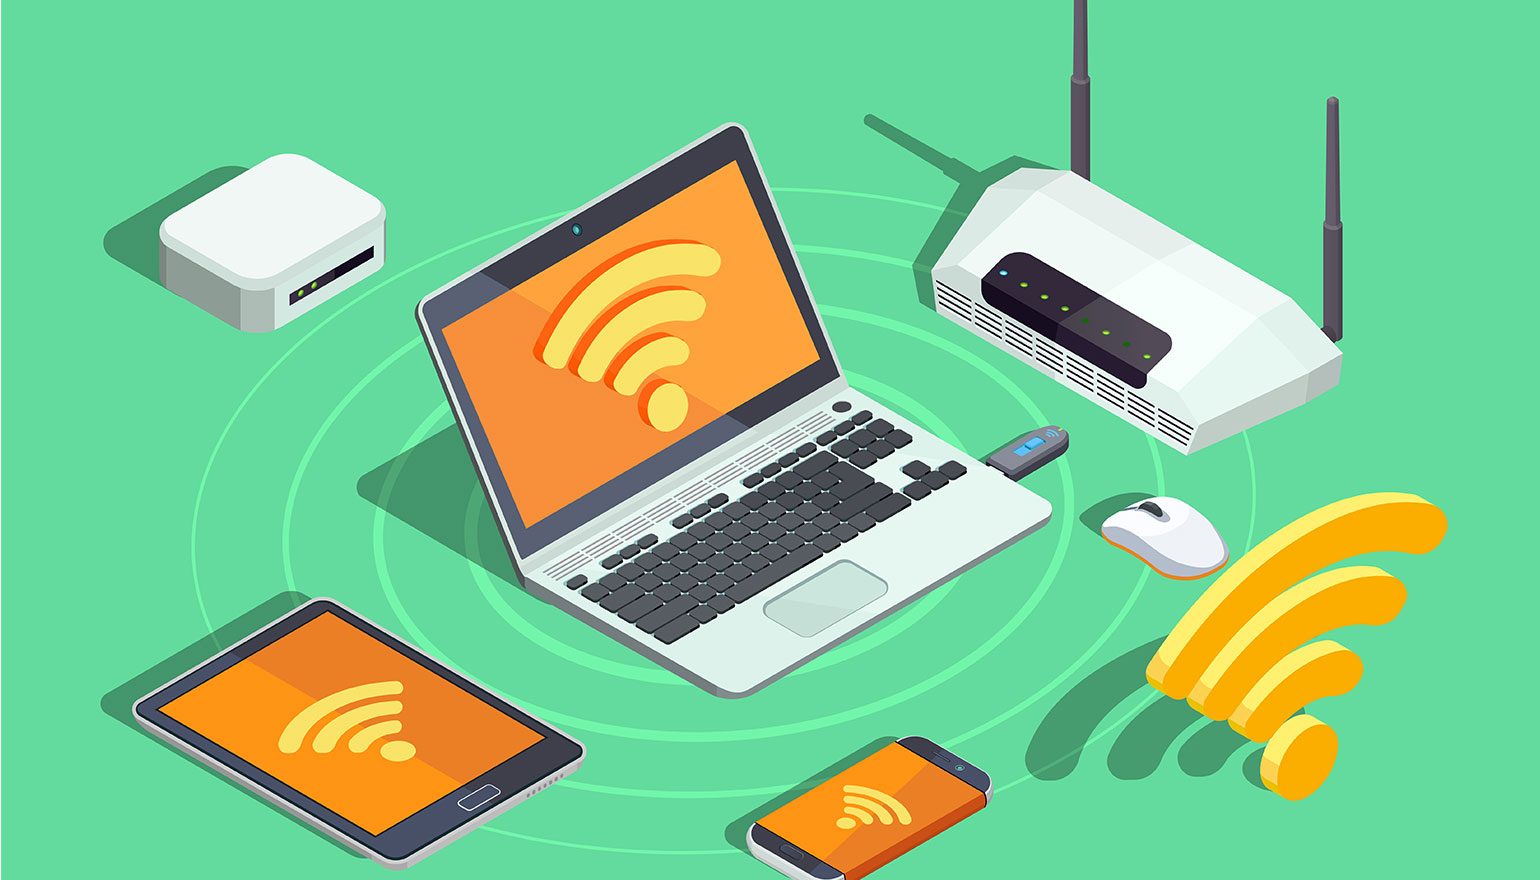 Leer Leidinggevende Bij elkaar passen Alles dat je wil weten over beveiliging van wifi (wpa, wpa2 en wpa3) | FWD